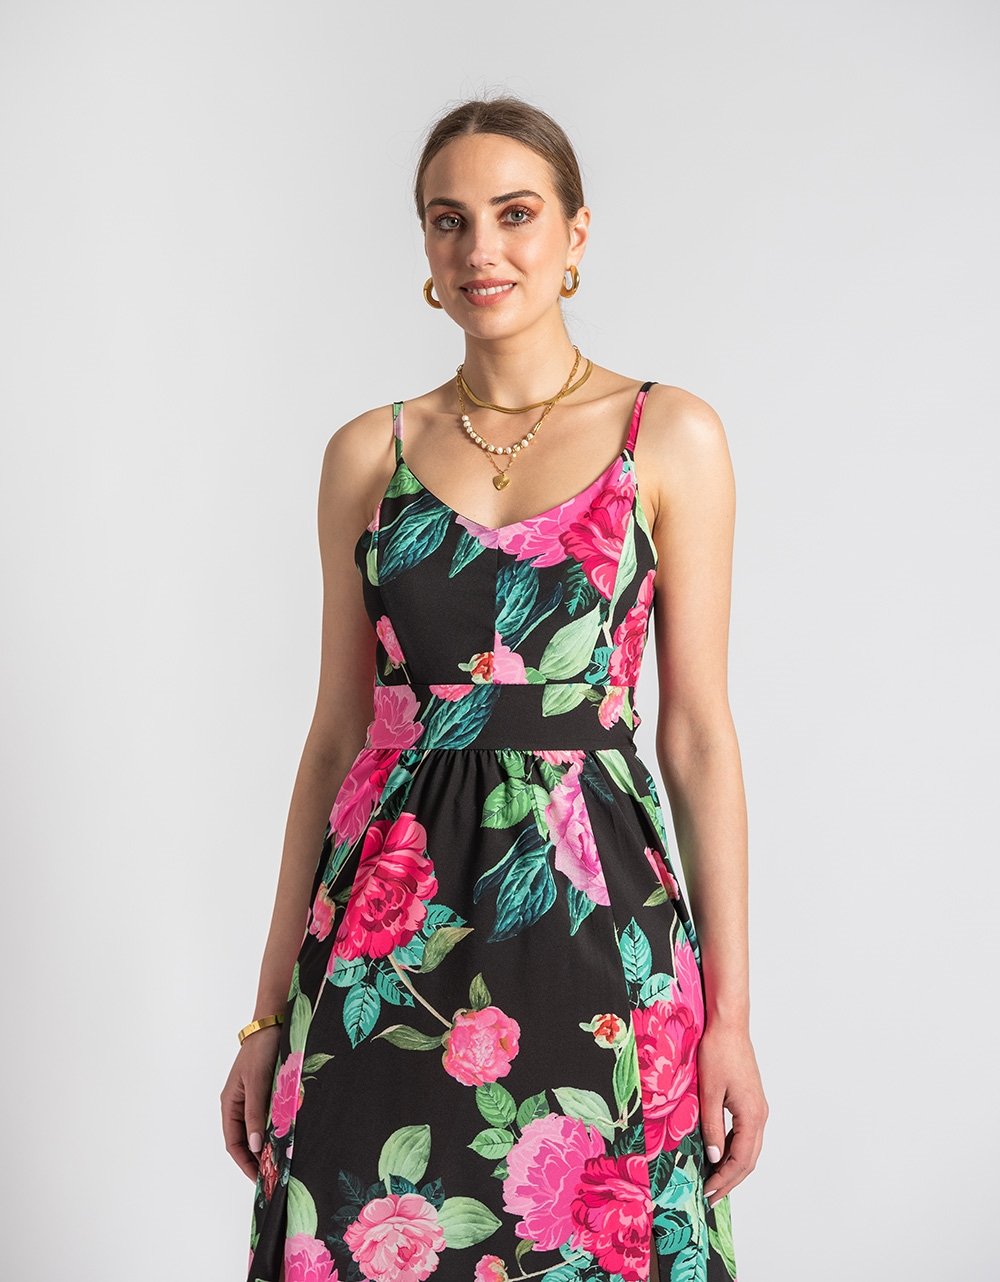 Εικόνα από Floral maxi φόρεμα με σκίσιμο στο πλάι Μαύρο